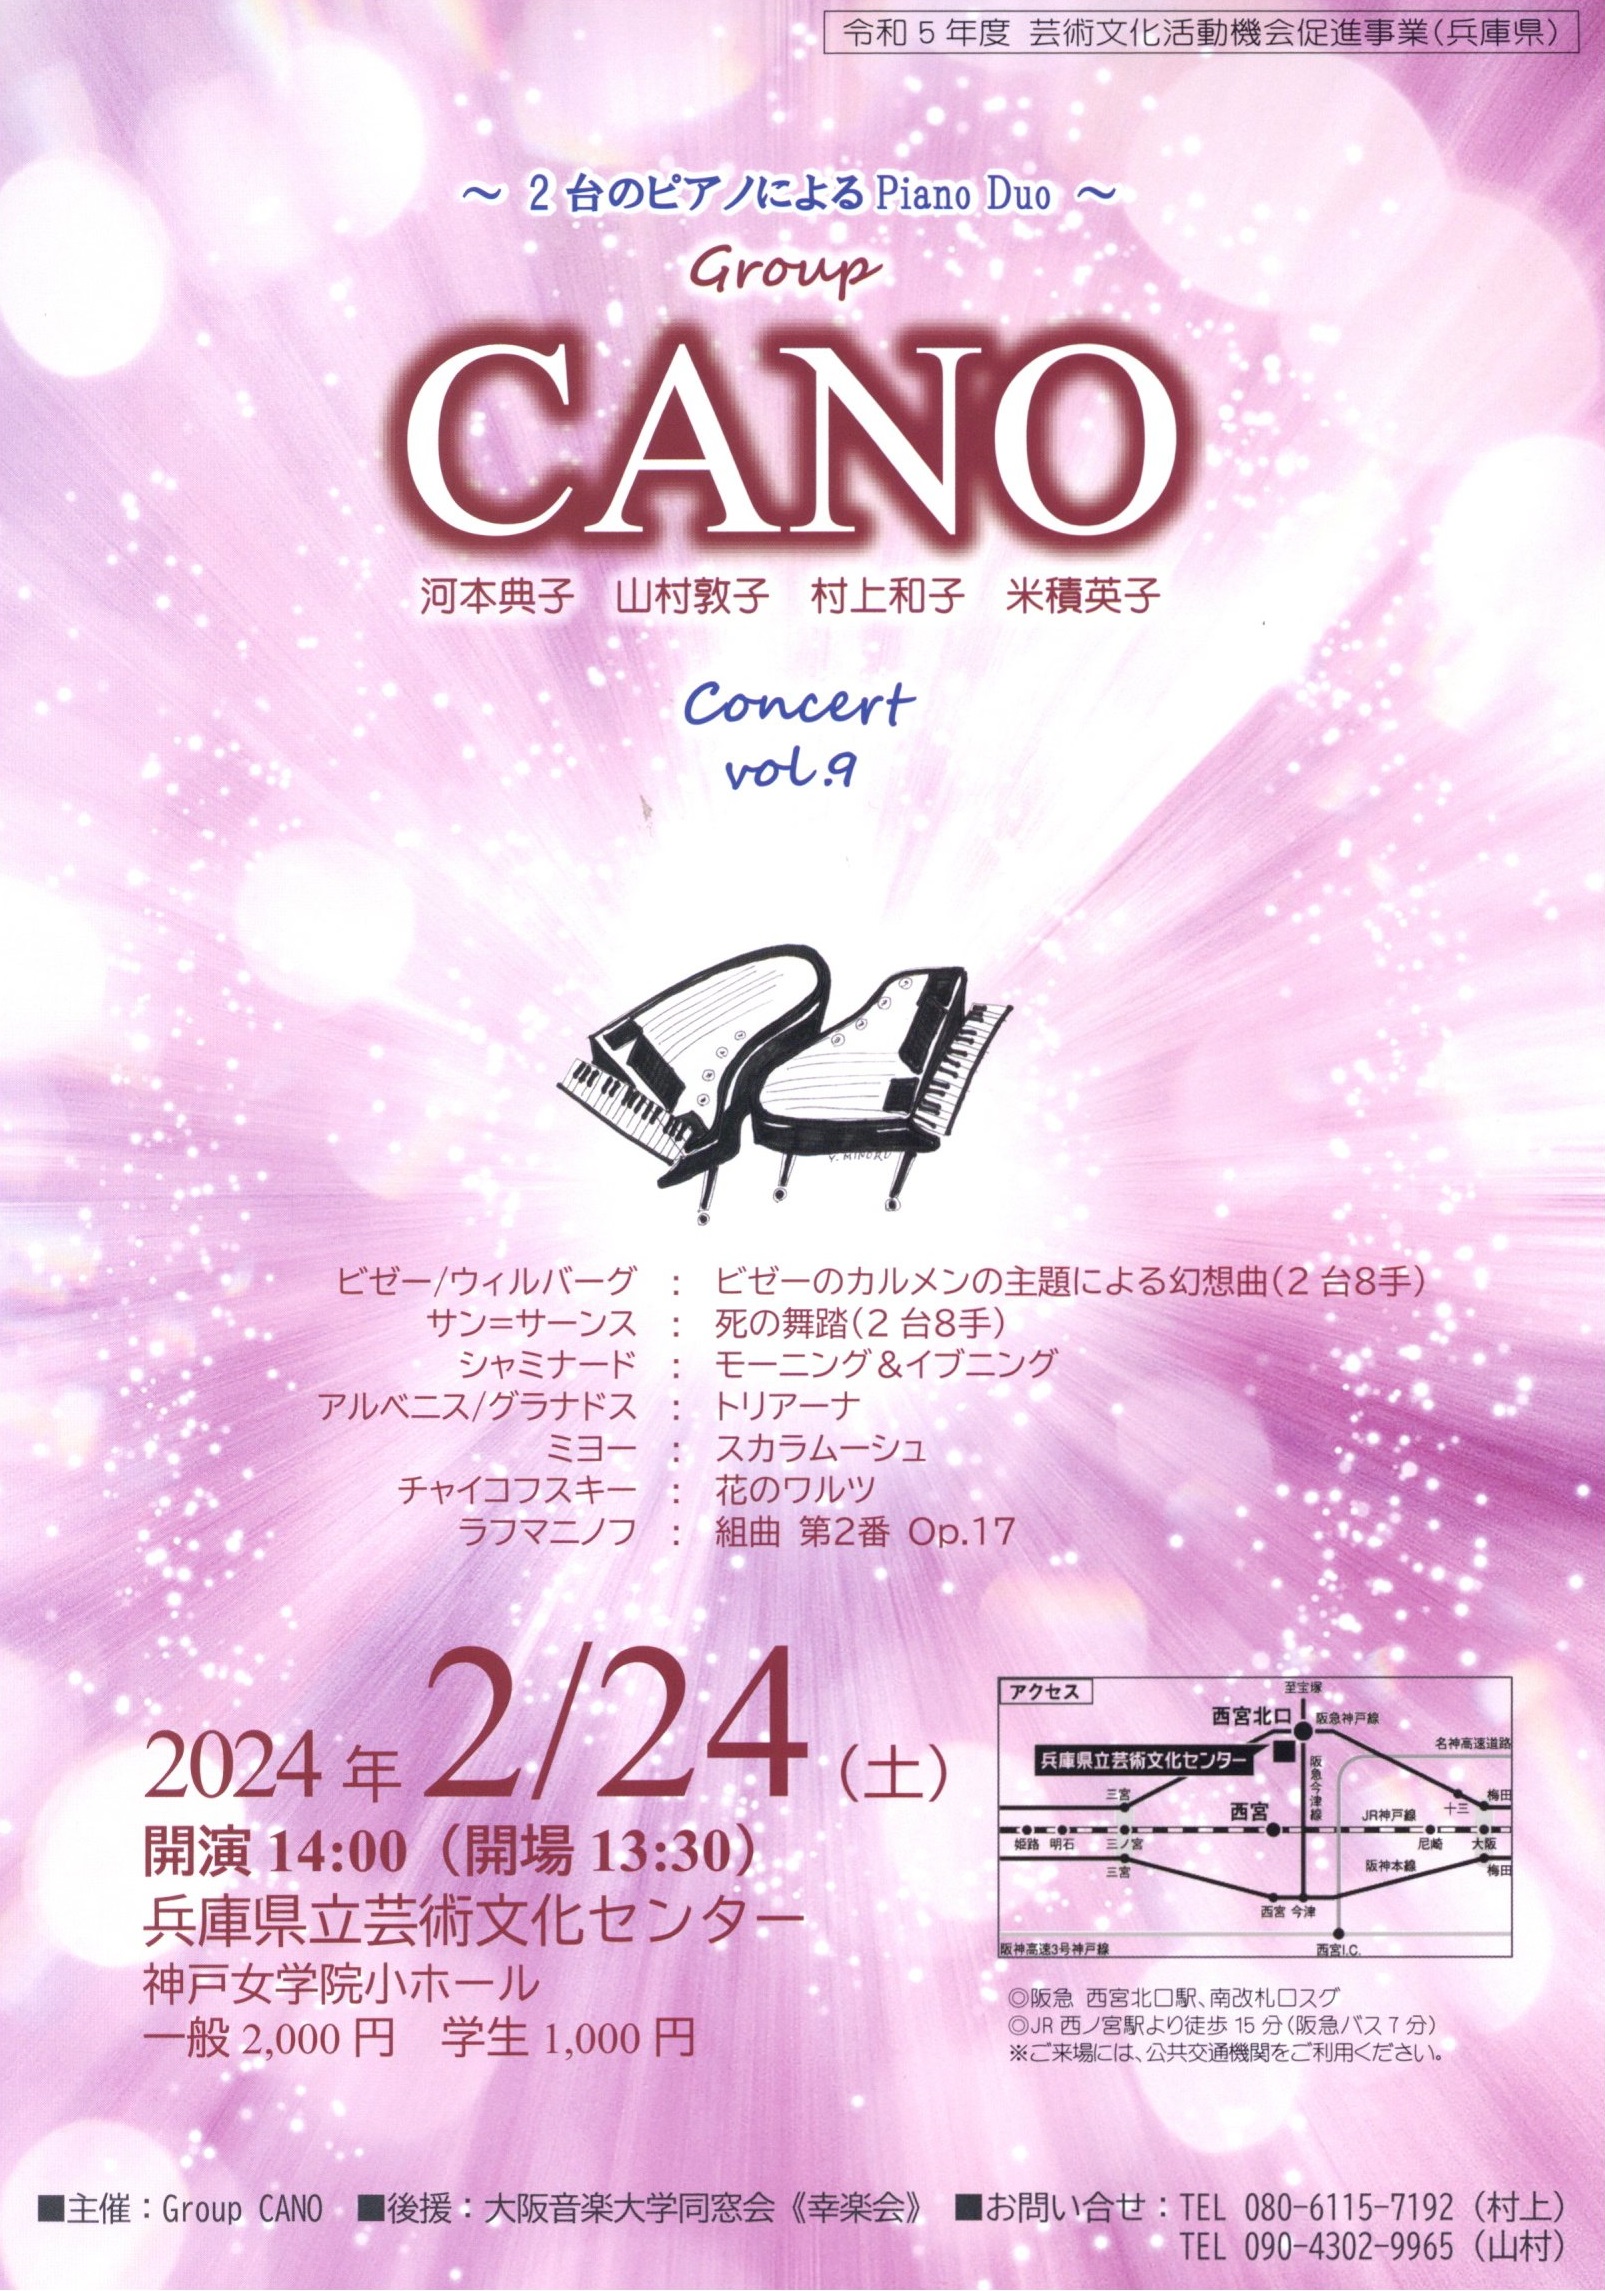 2台のピアノによるPiano Duo Group CANO Concert Vol.9